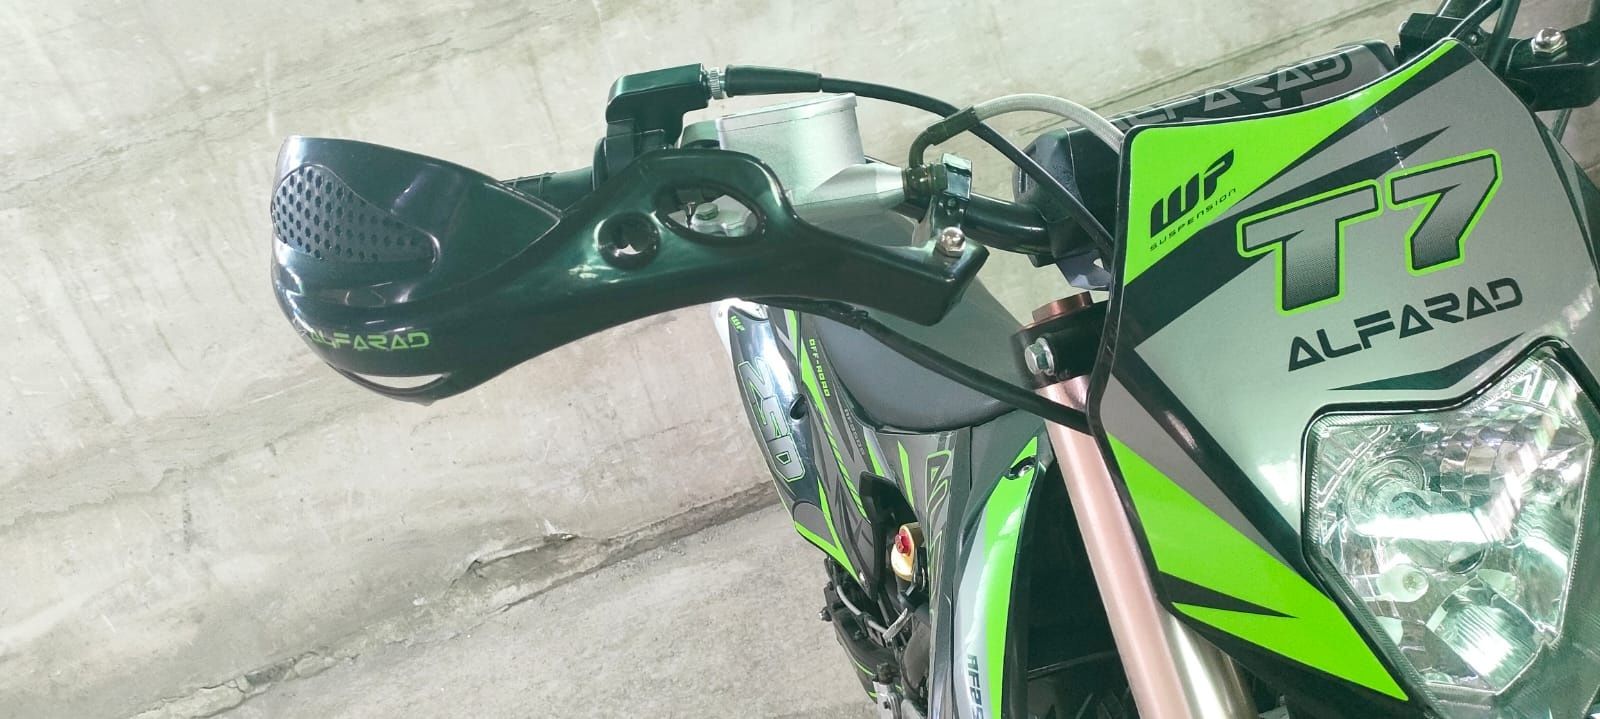 Alfara 250cc nou cu garanție și livrare în toată țara pentru adulți